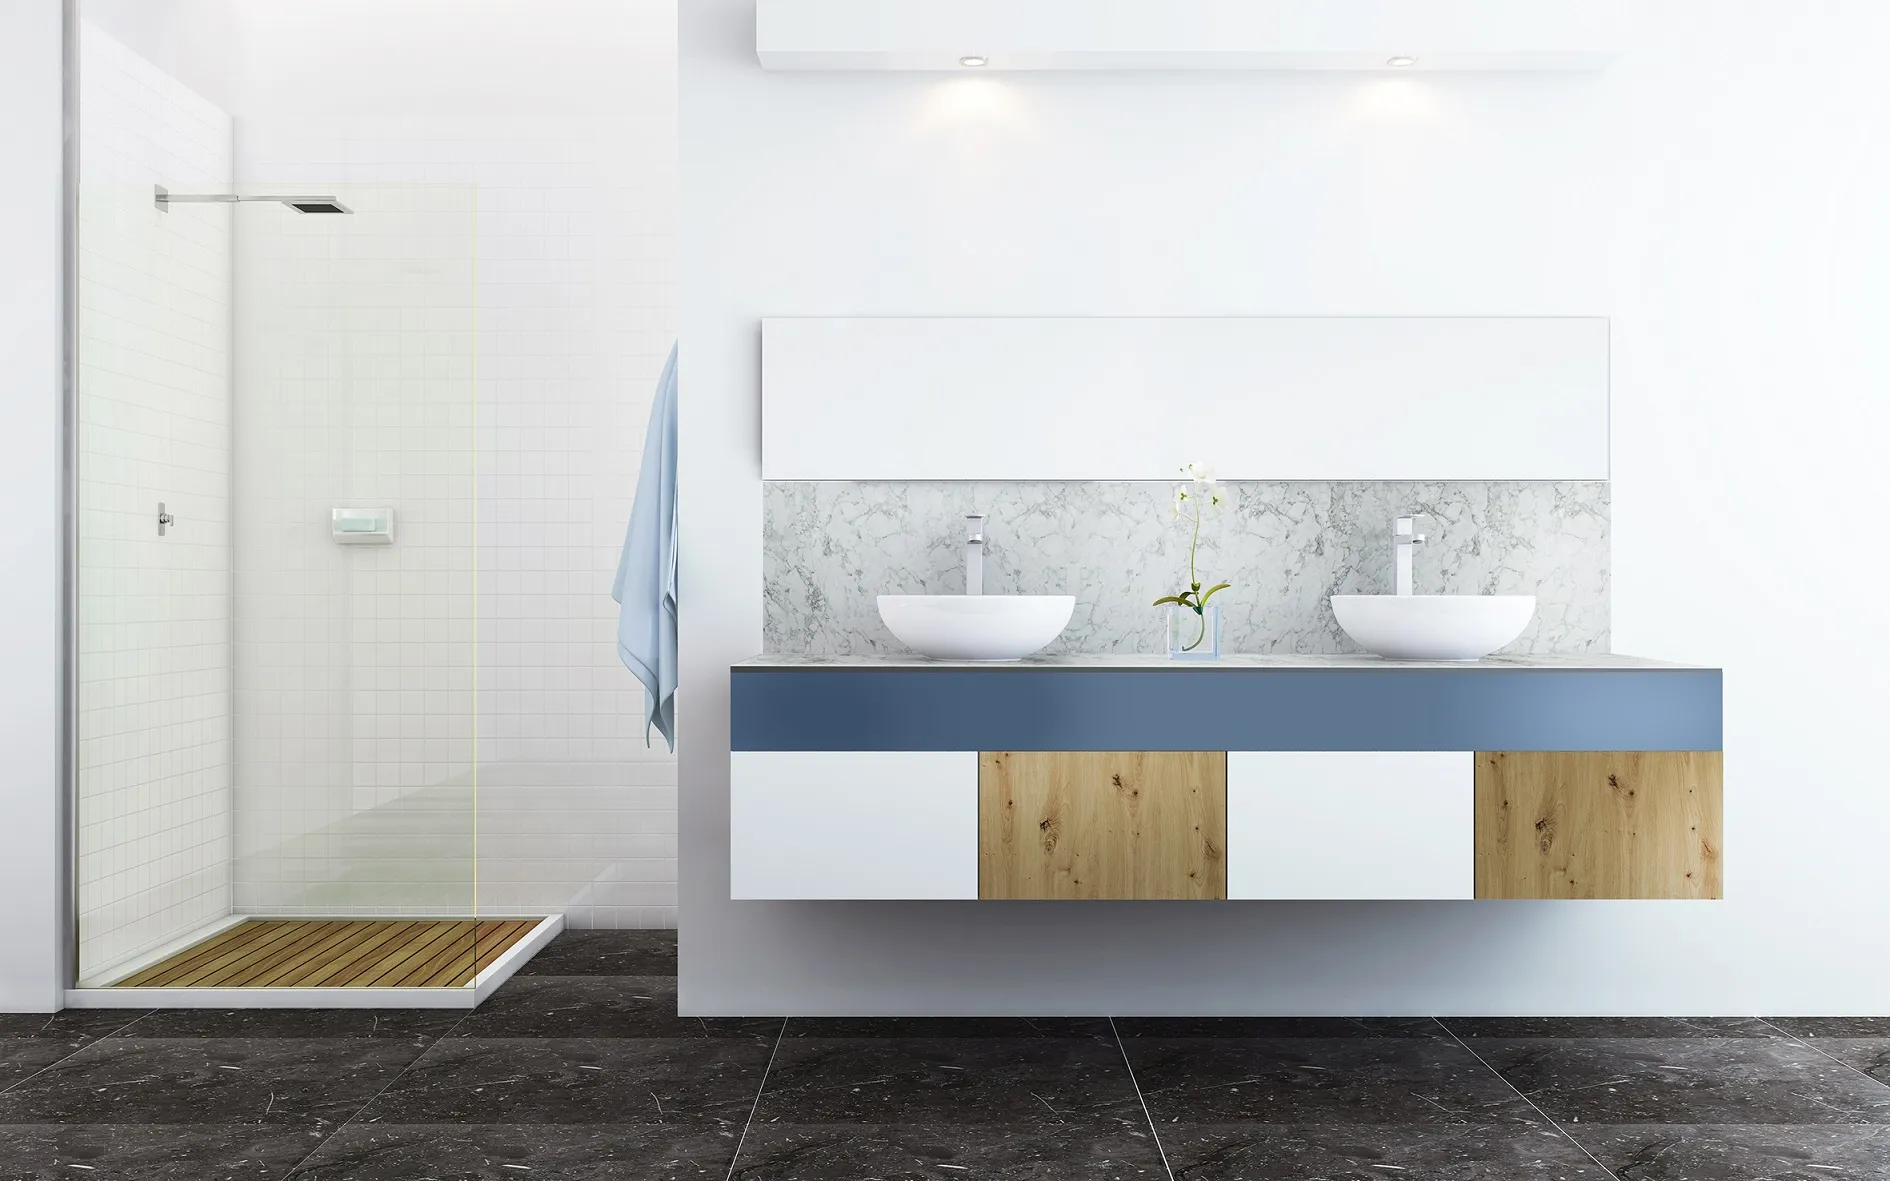 Łazienka w stylu nowoczesnym w odcieniach bieli szarości i niebieskiego z dużym lustrem i dwoma umywalkami nadblatowymi